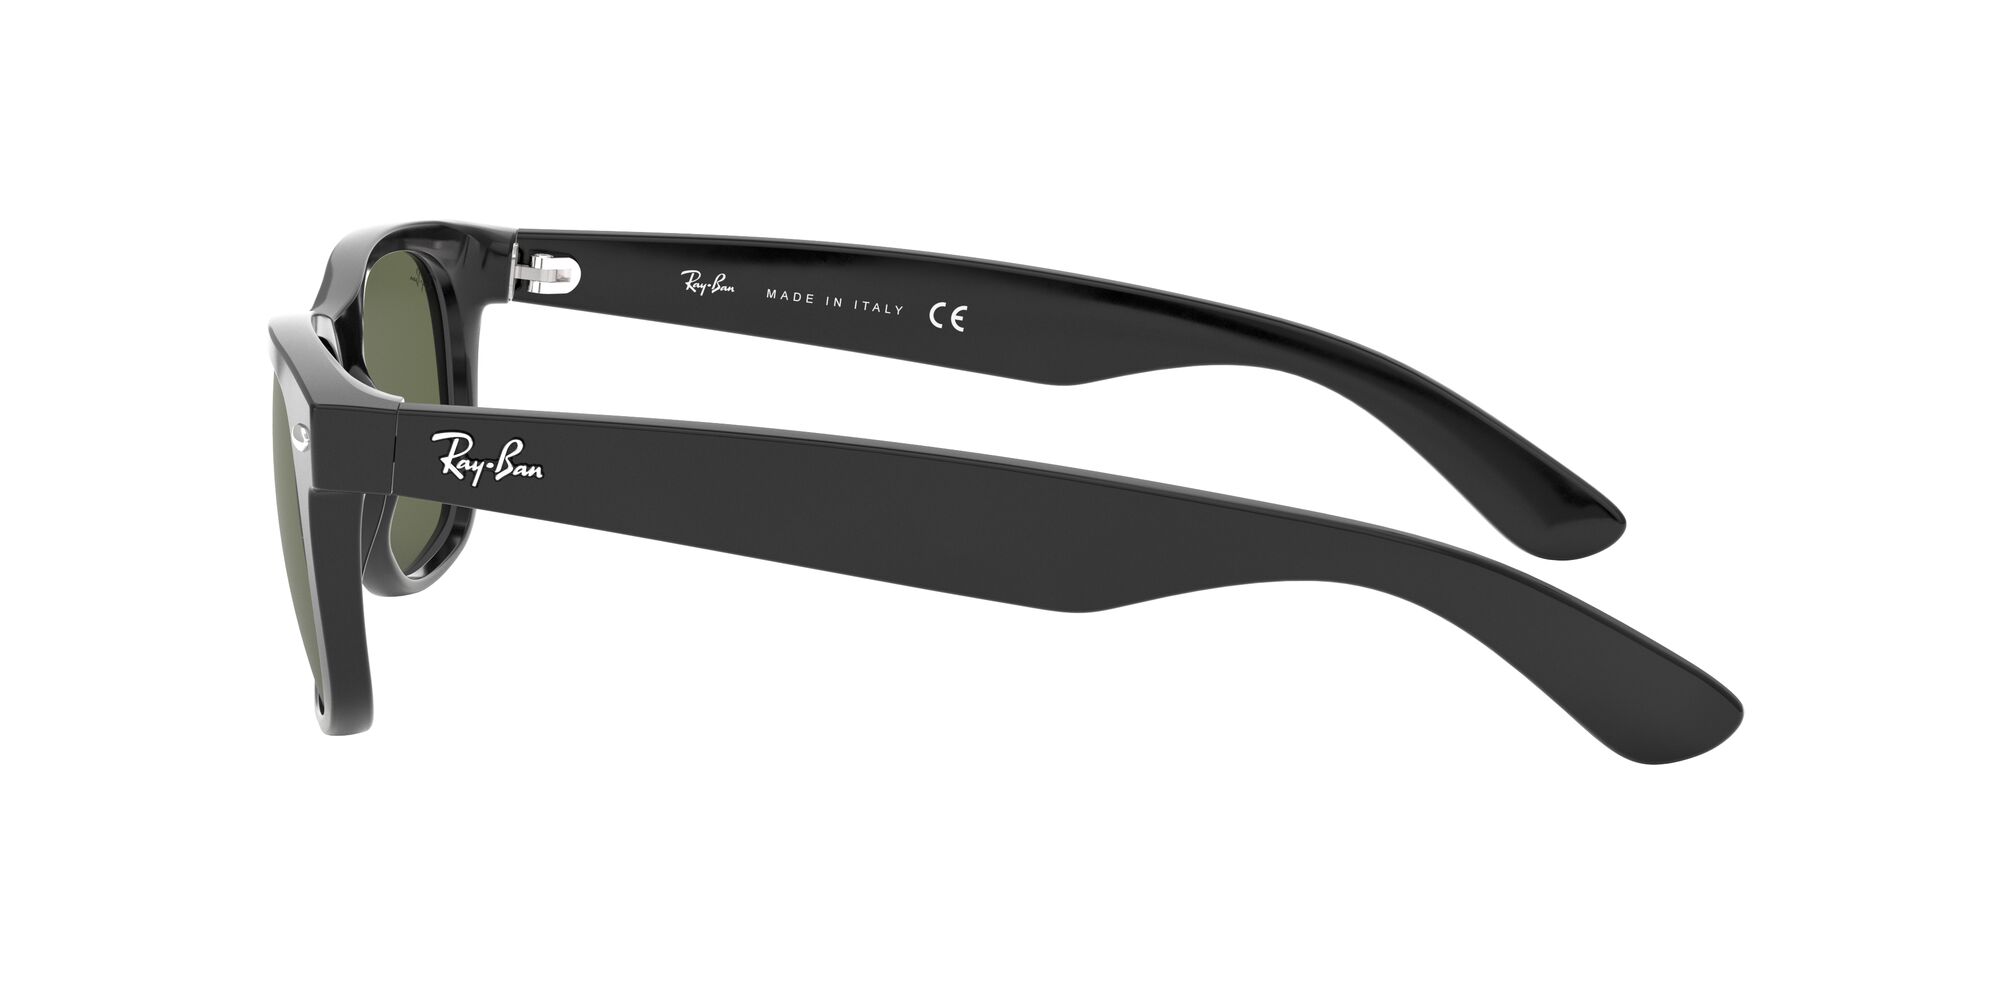 Ray-Ban RB2132 New Wayfarer Adult Sunglasses - image 4 of 12